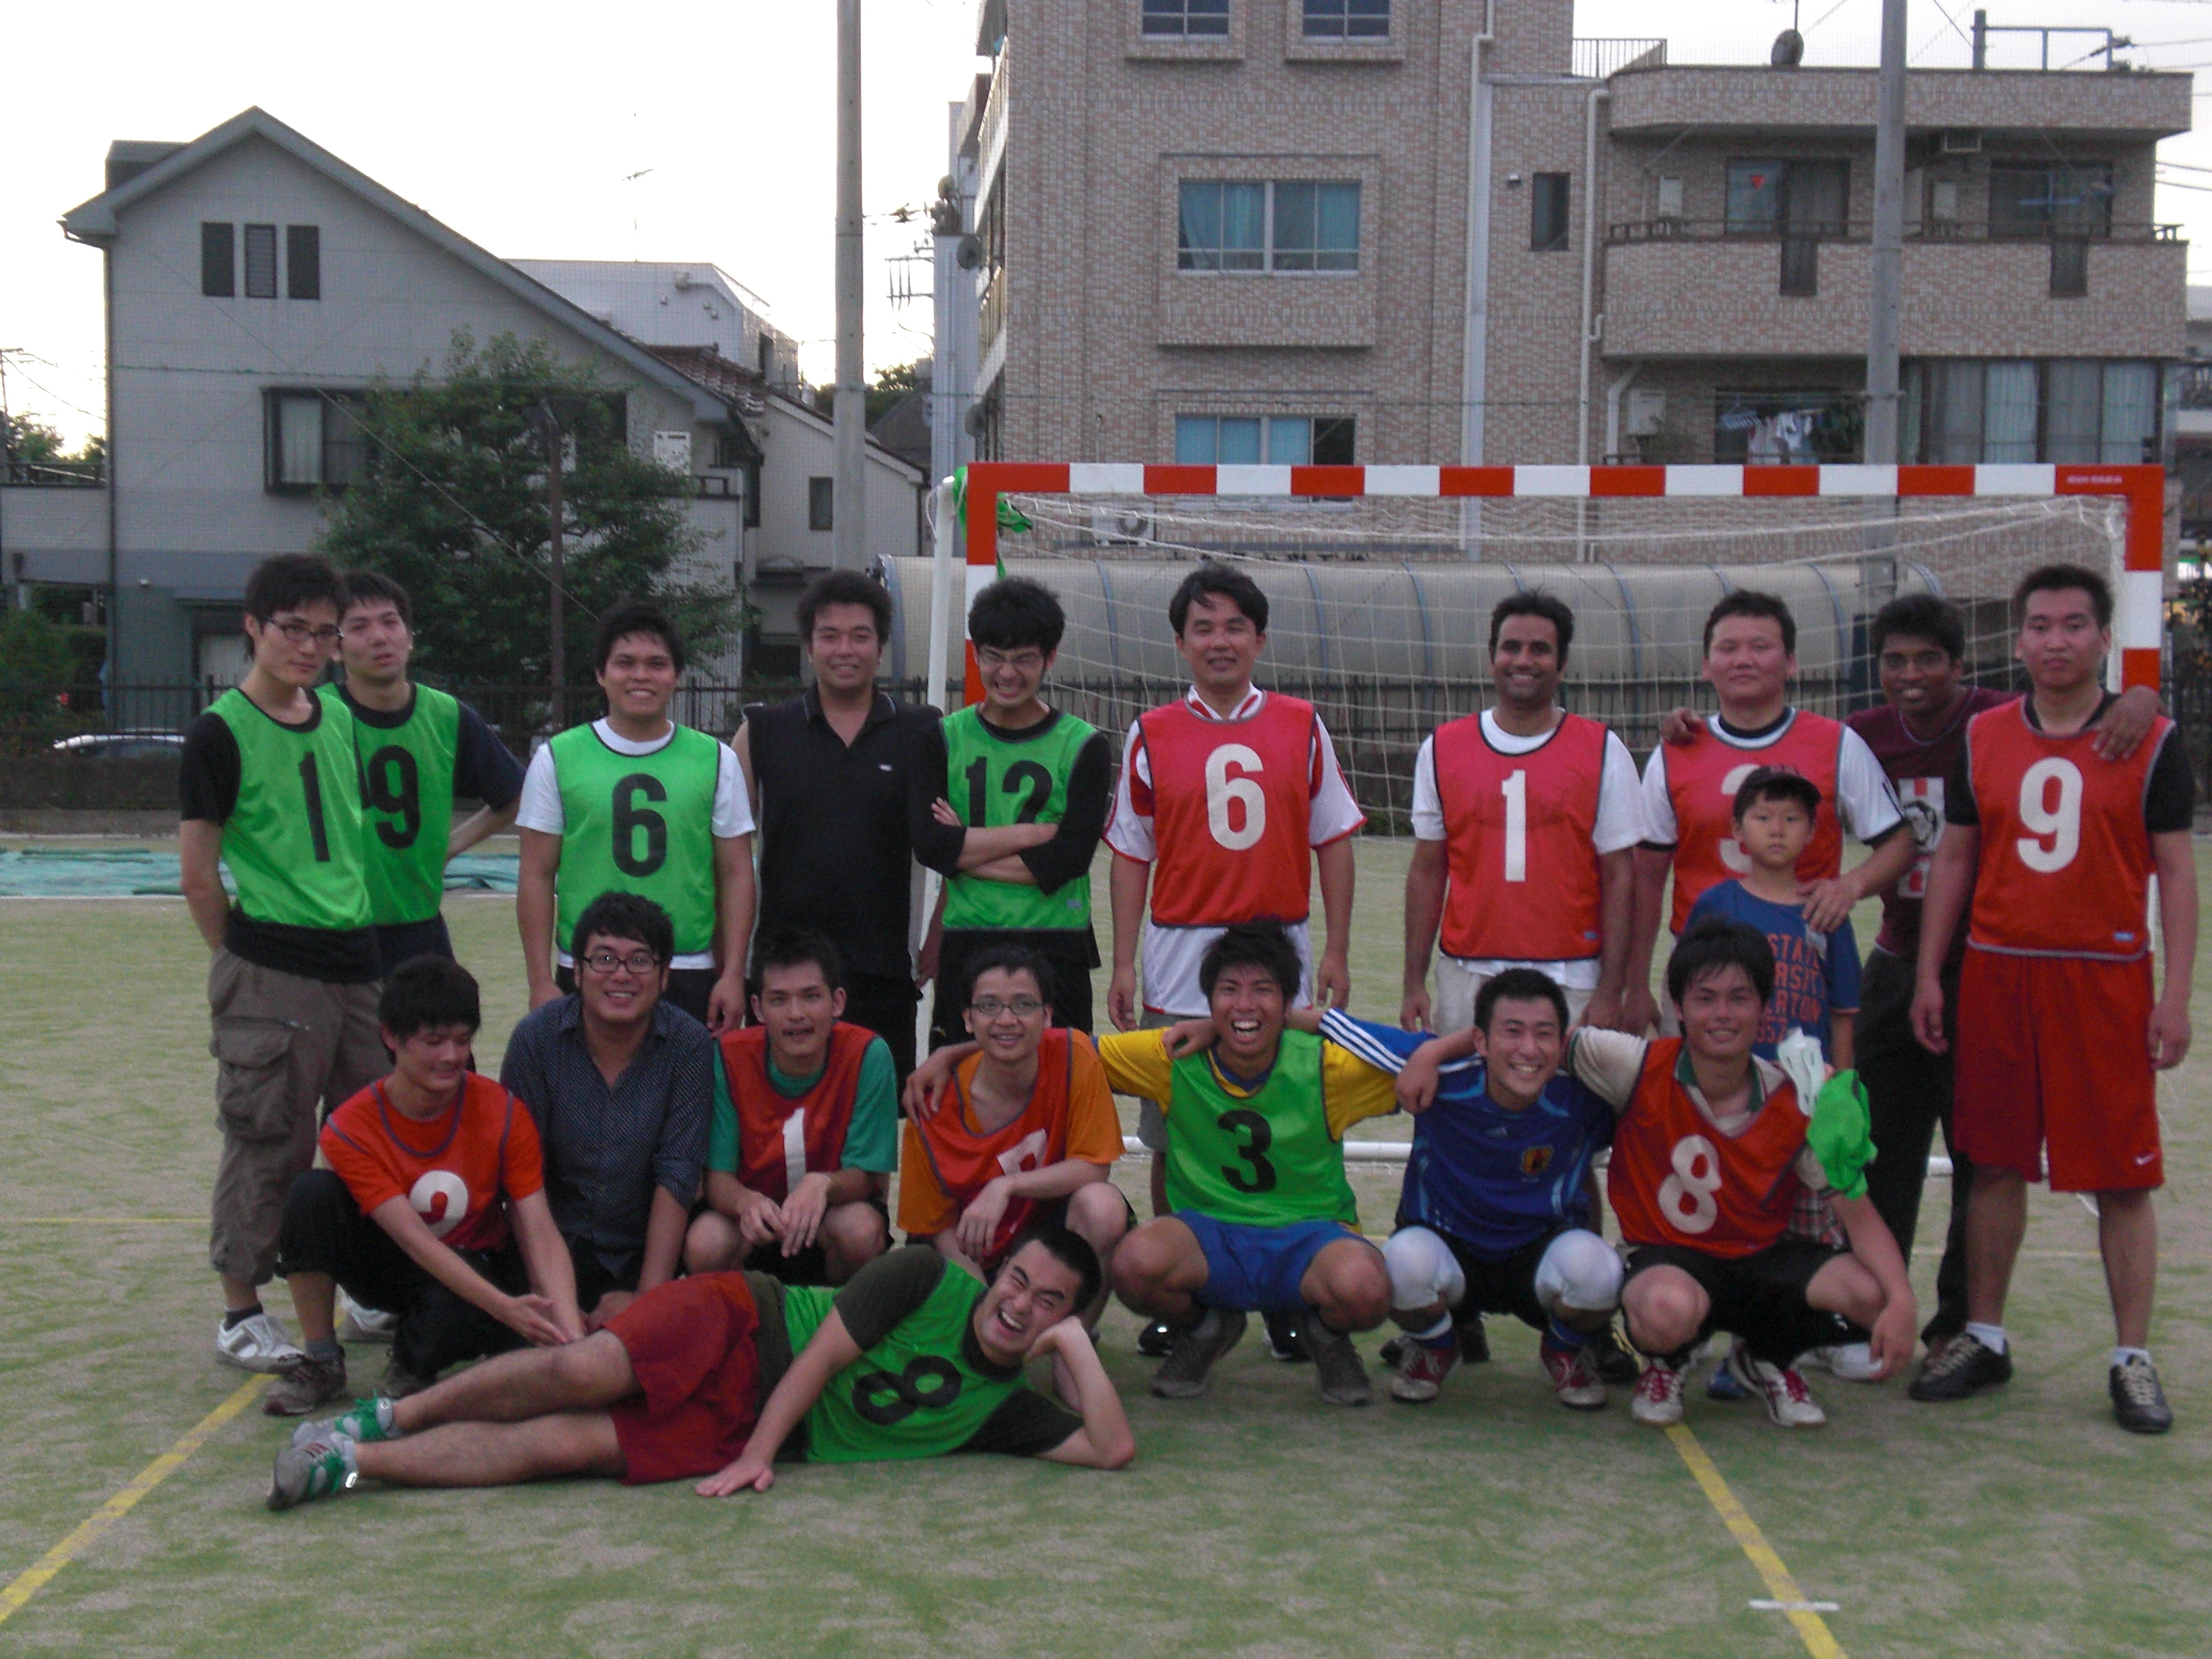 soccergame2010.JPG